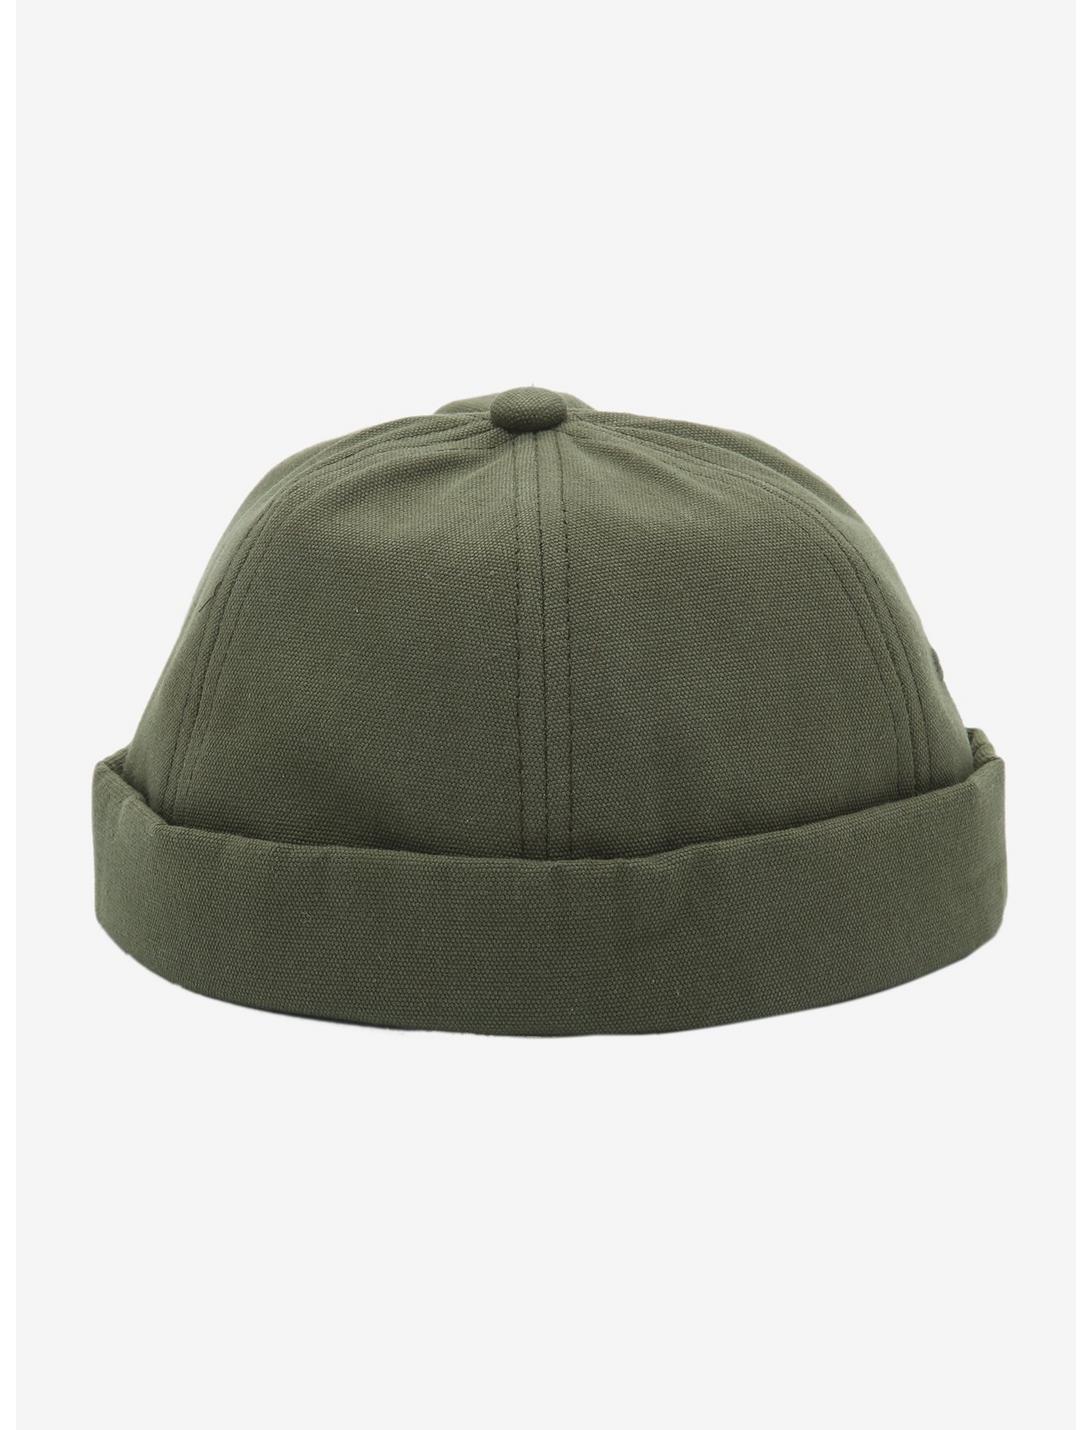 Green Brimless Ball Cap, , hi-res